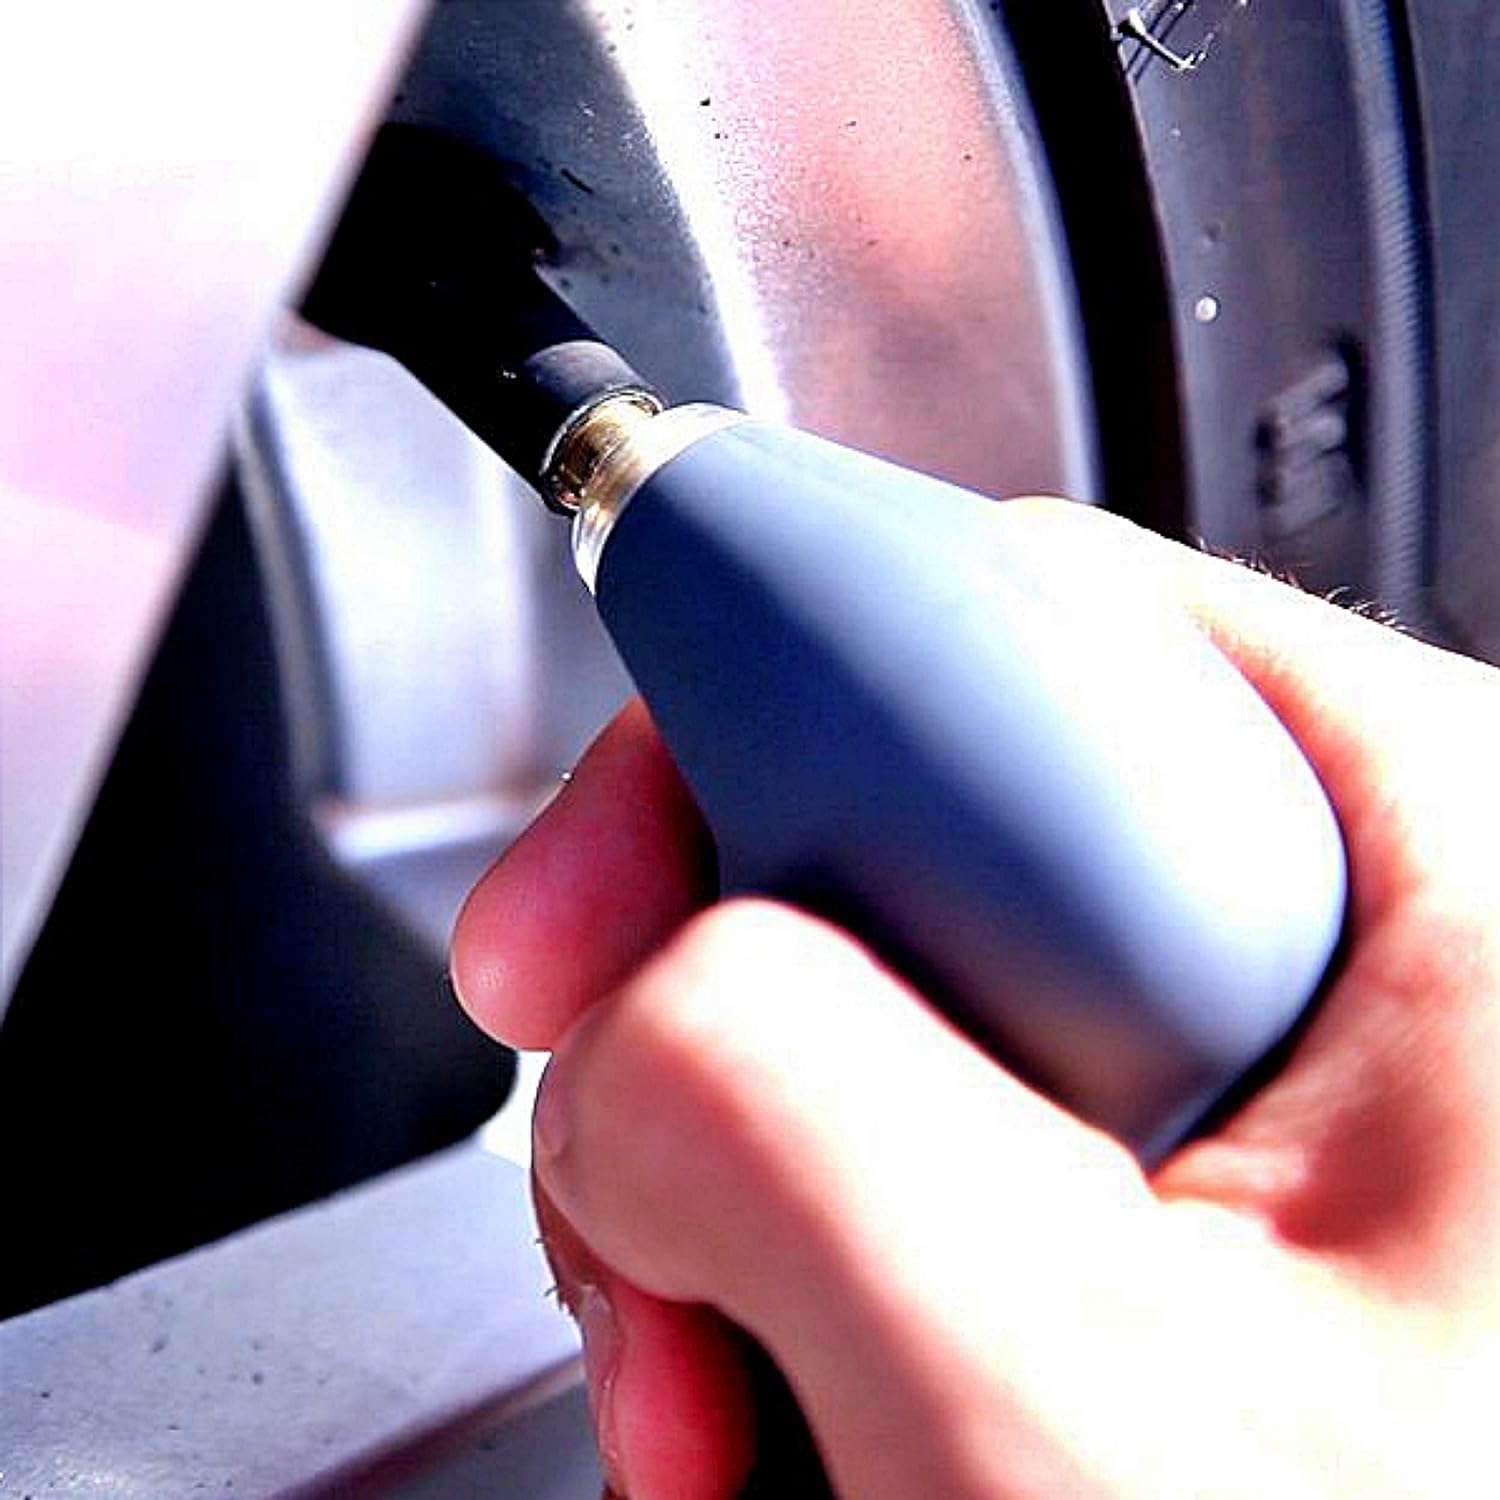 Das digitale Reifendruckmessgerät ist praktisch, um Ihren Reifendruck zu messen